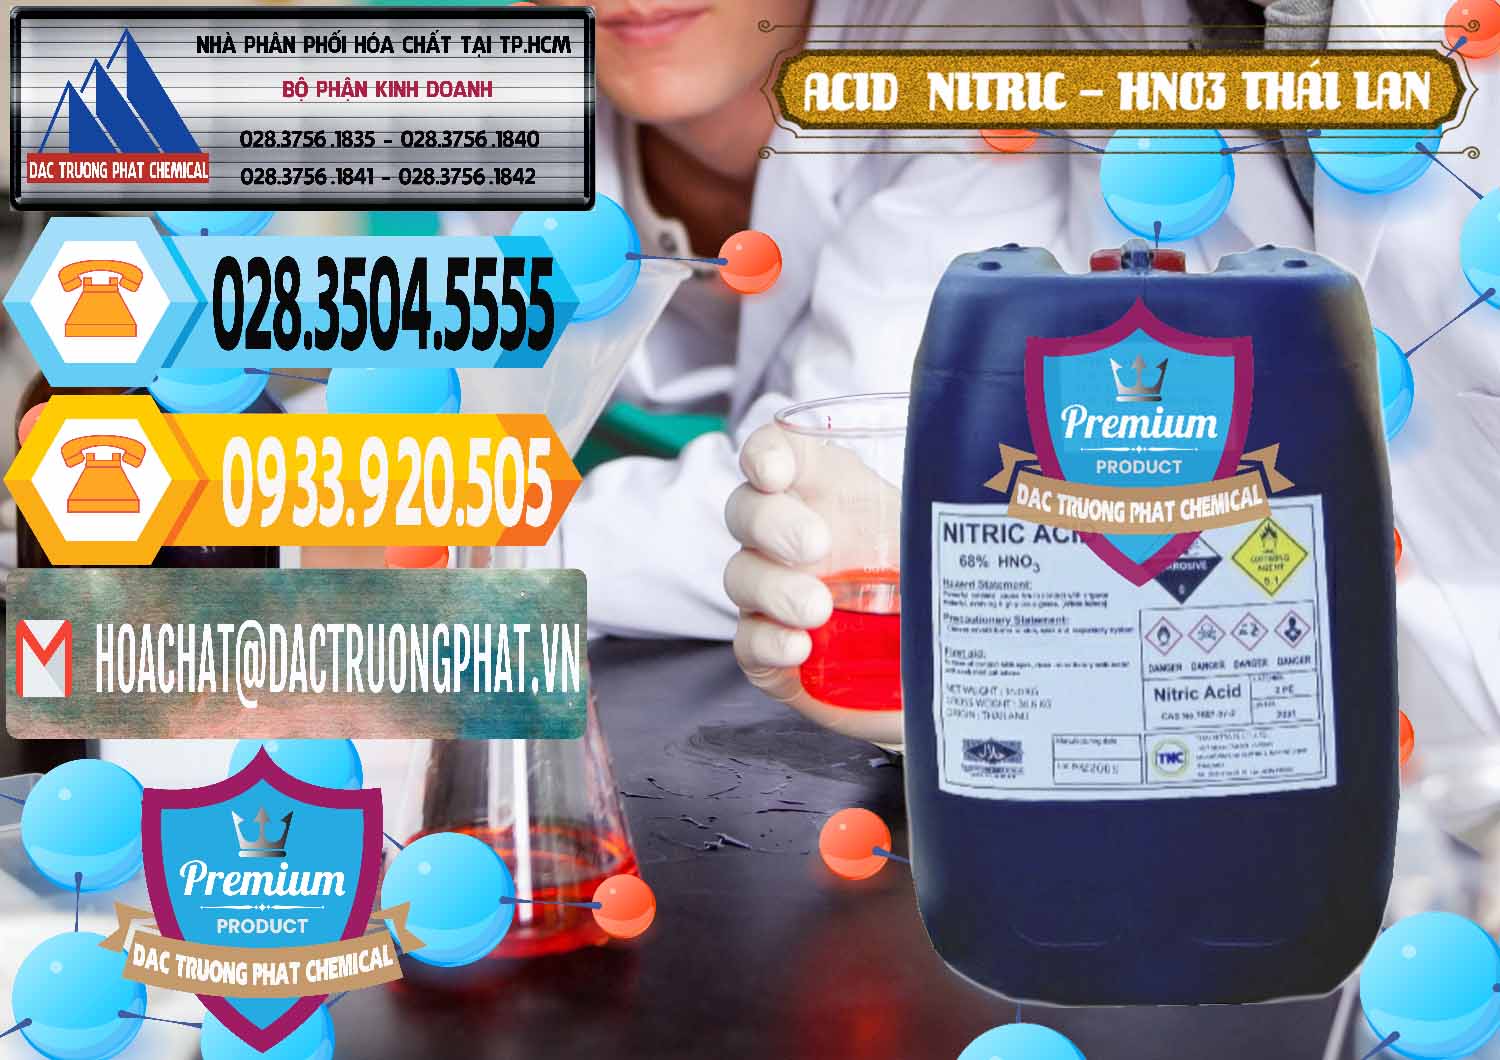 Cty phân phối & bán Acid Nitric – Axit Nitric HNO3 Thái Lan Thailand - 0344 - Cty chuyên phân phối & kinh doanh hóa chất tại TP.HCM - hoachattayrua.net